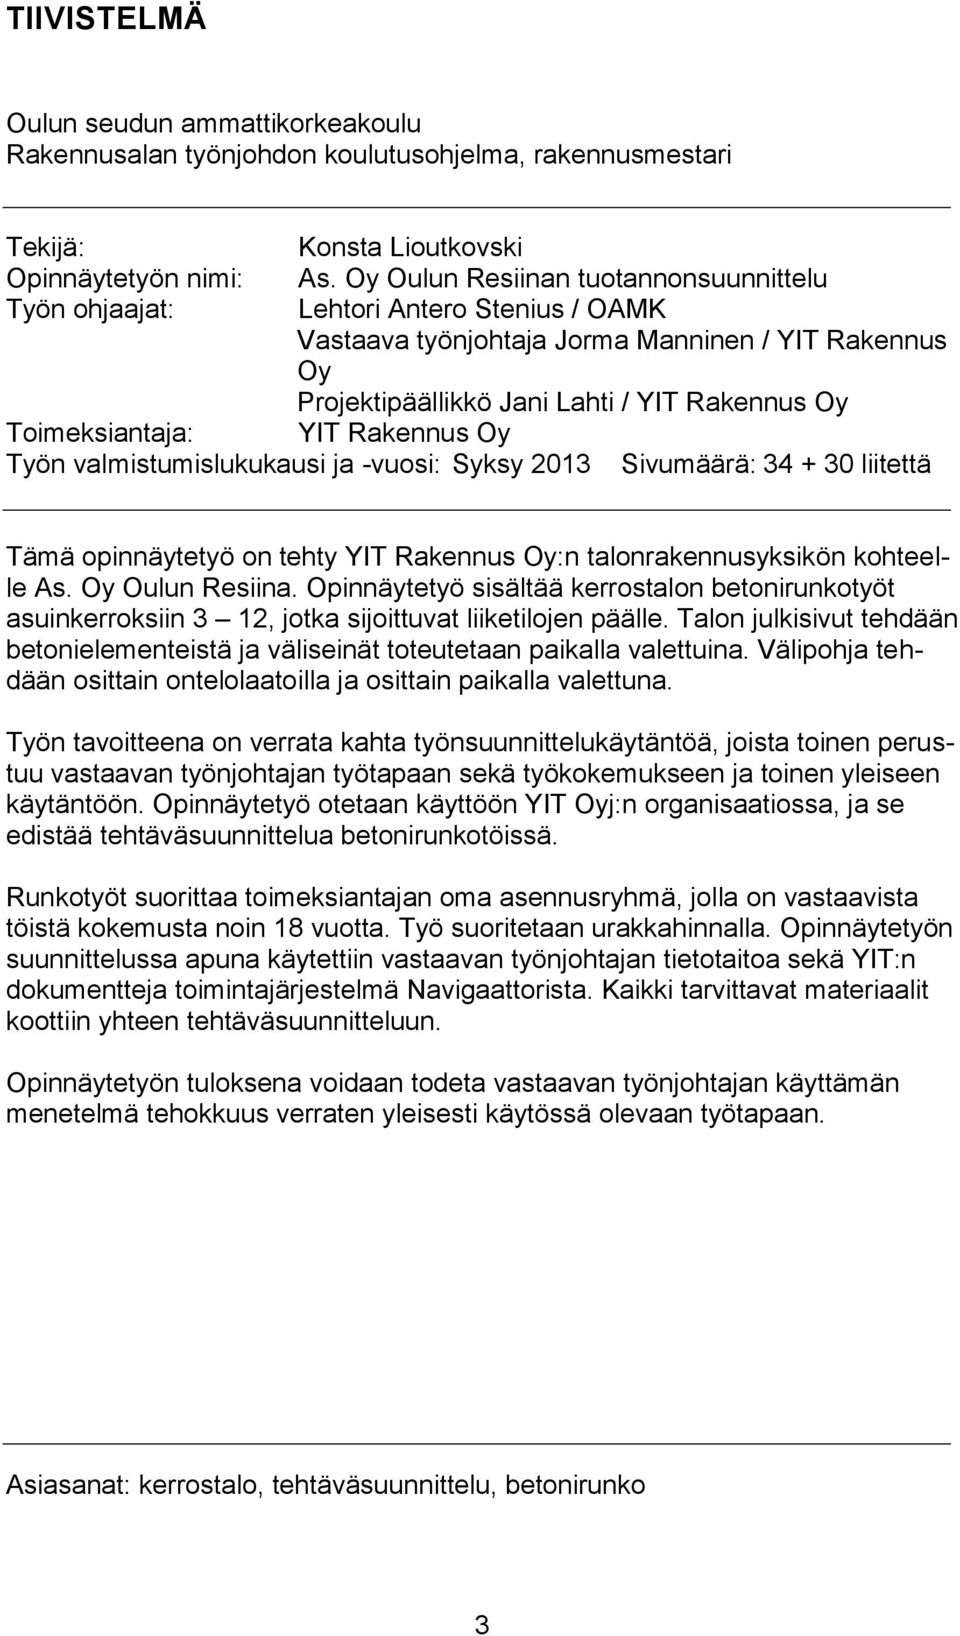 valmistumislukukausi ja -vuosi: Syksy 2013 Sivumäärä: 34 + 30 liitettä Tämä opinnäytetyö on tehty :n talonrakennusyksikön kohteelle As. Oy Oulun Resiina.